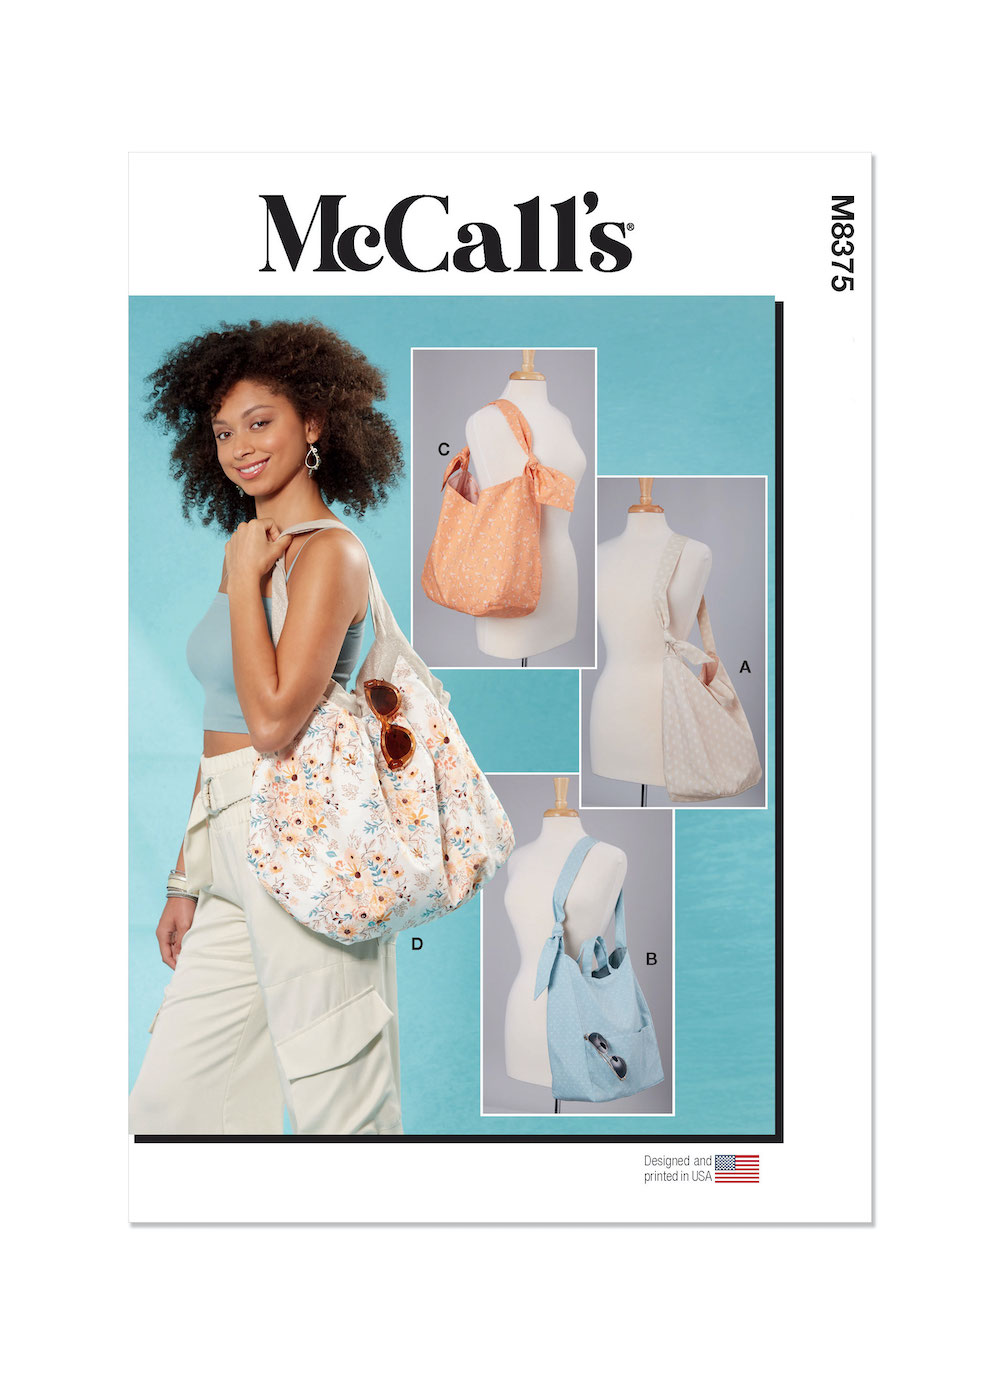 McCall's® Papierschnittmuster Tasche in 4 Varianten  M8375  OS(One Size)